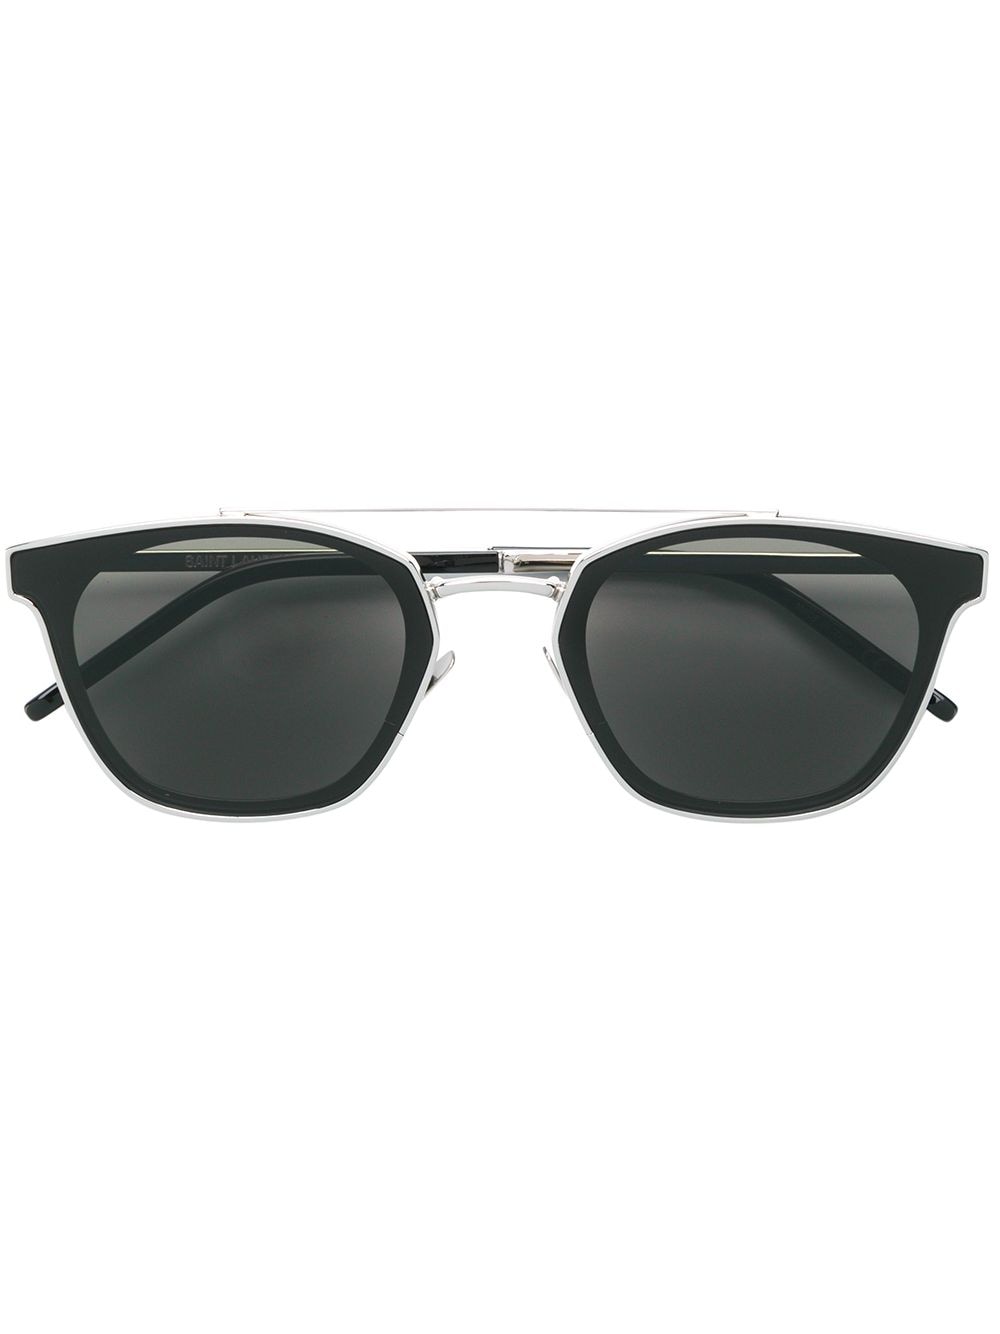 Saint Laurent Eyewear SL28 sunglasses - Silver von Saint Laurent Eyewear